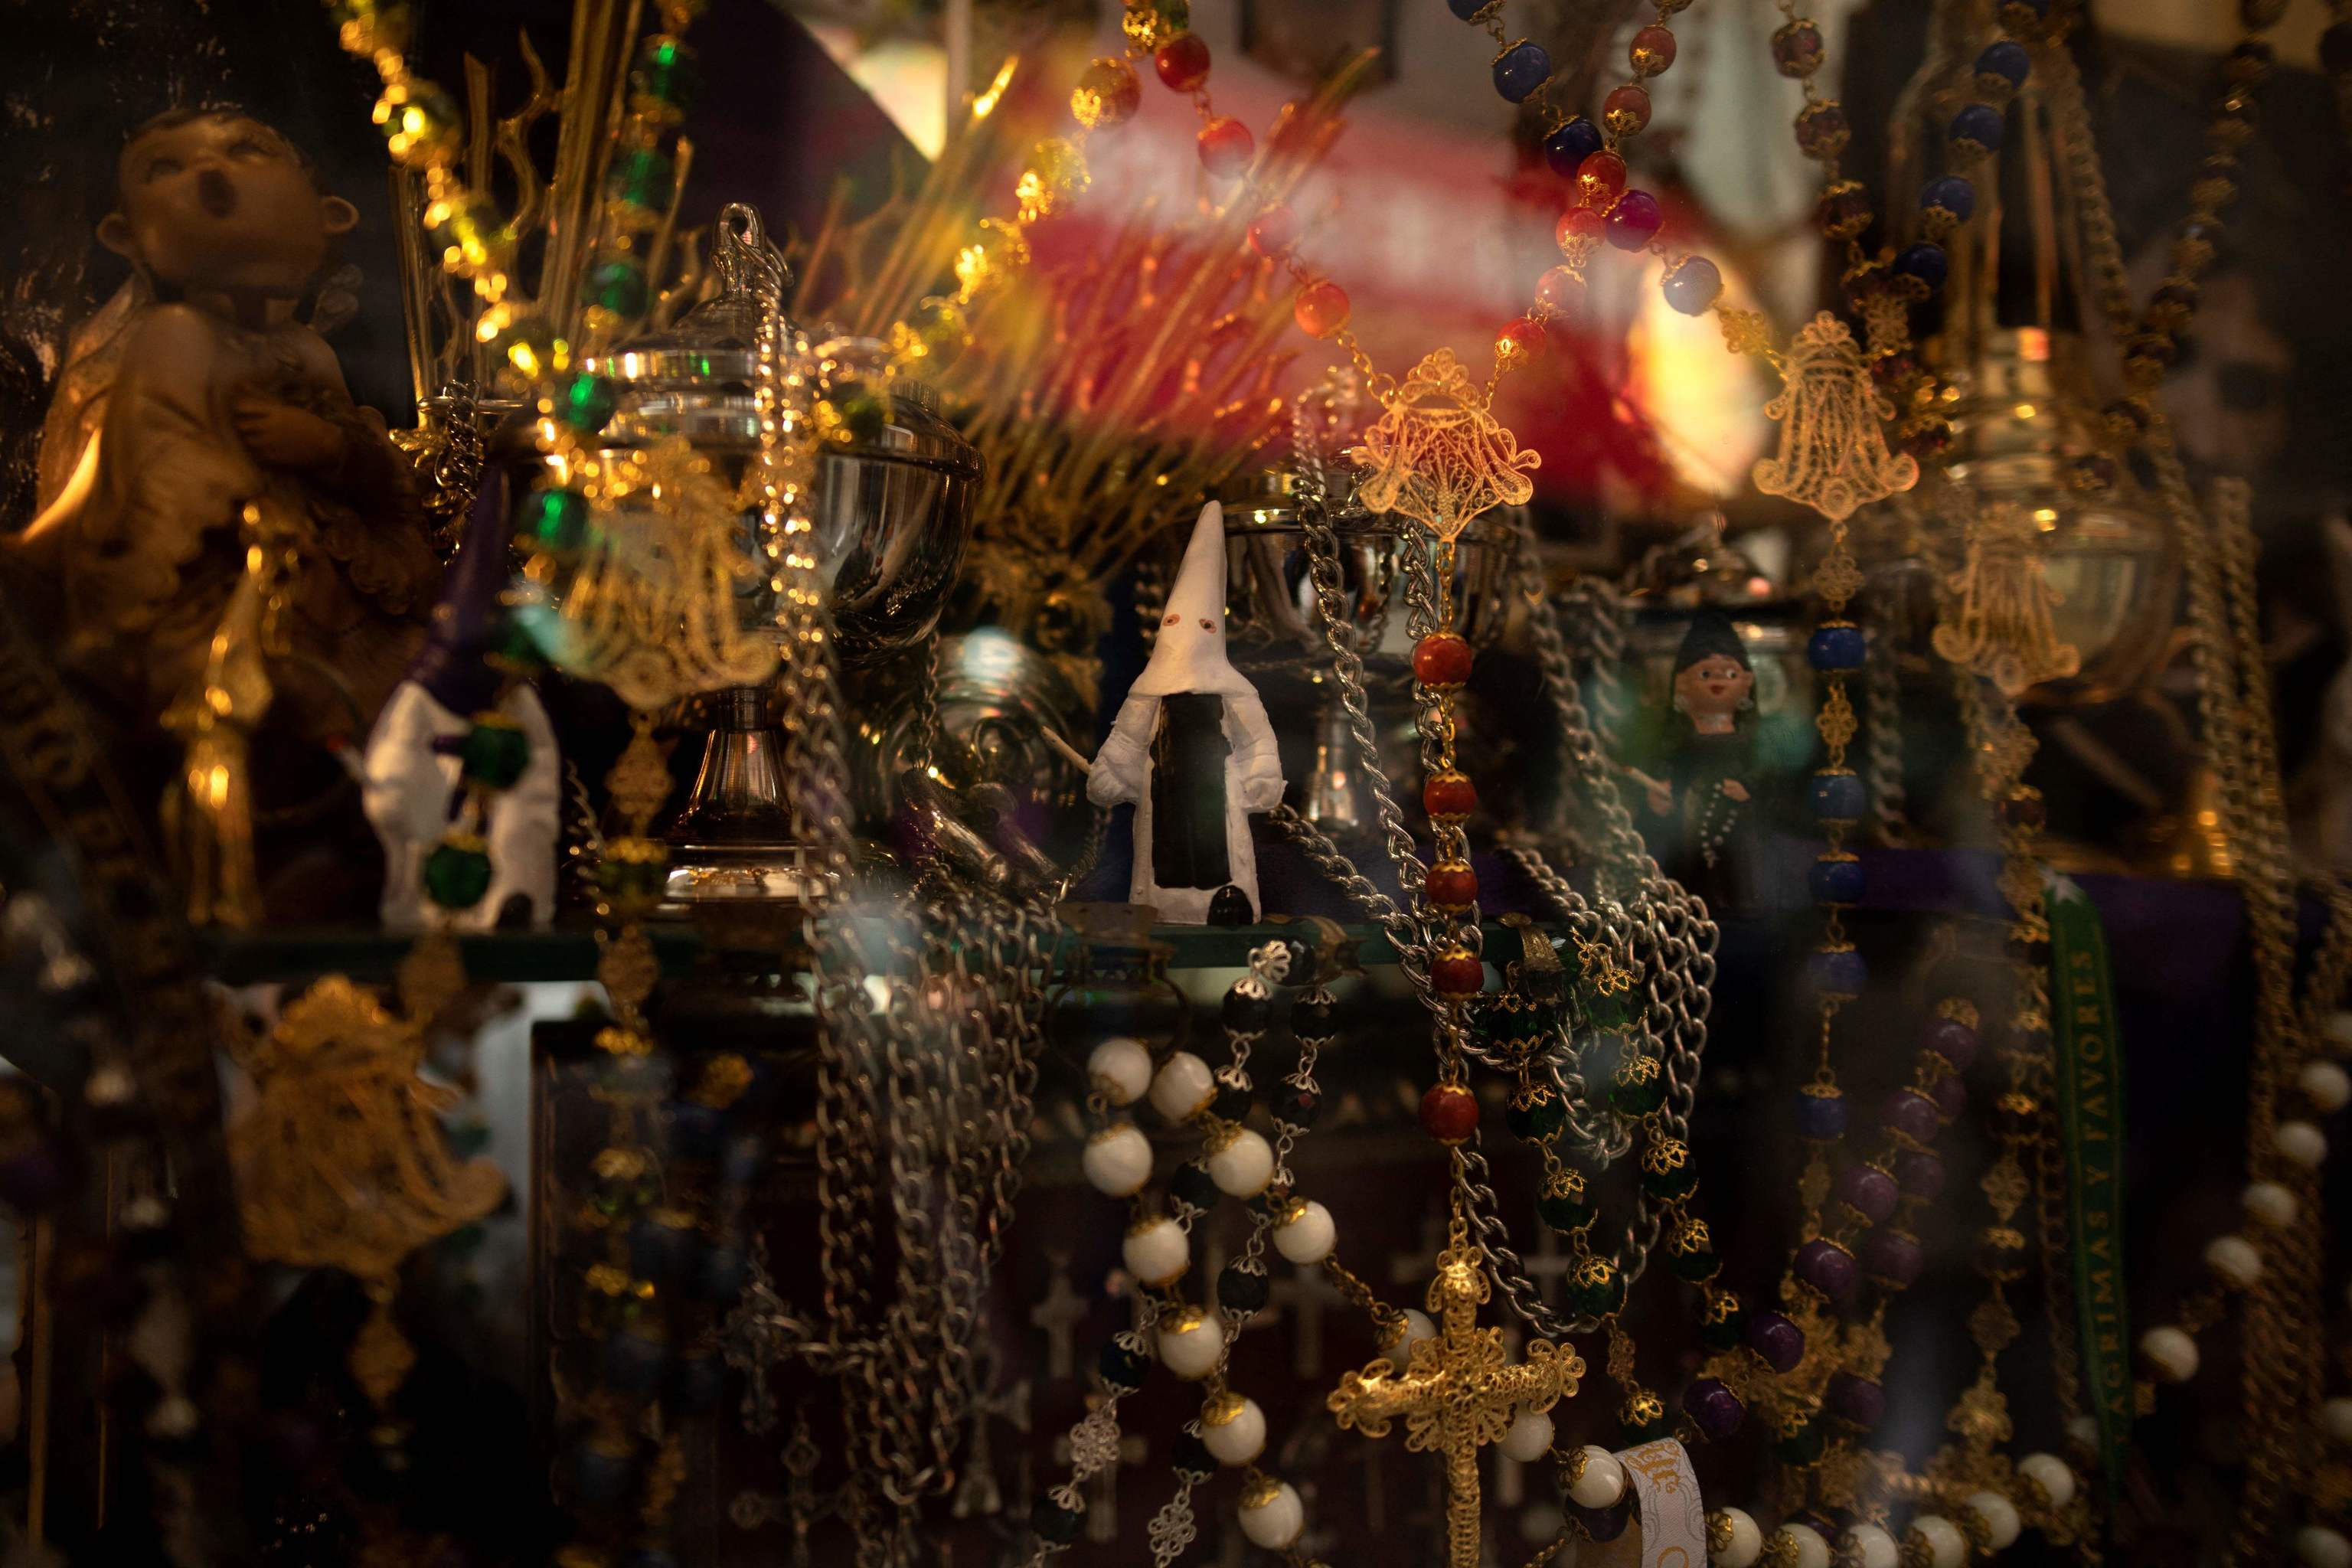 Objetos cofrades en una tienda de artculo religiosos de Mlaga.